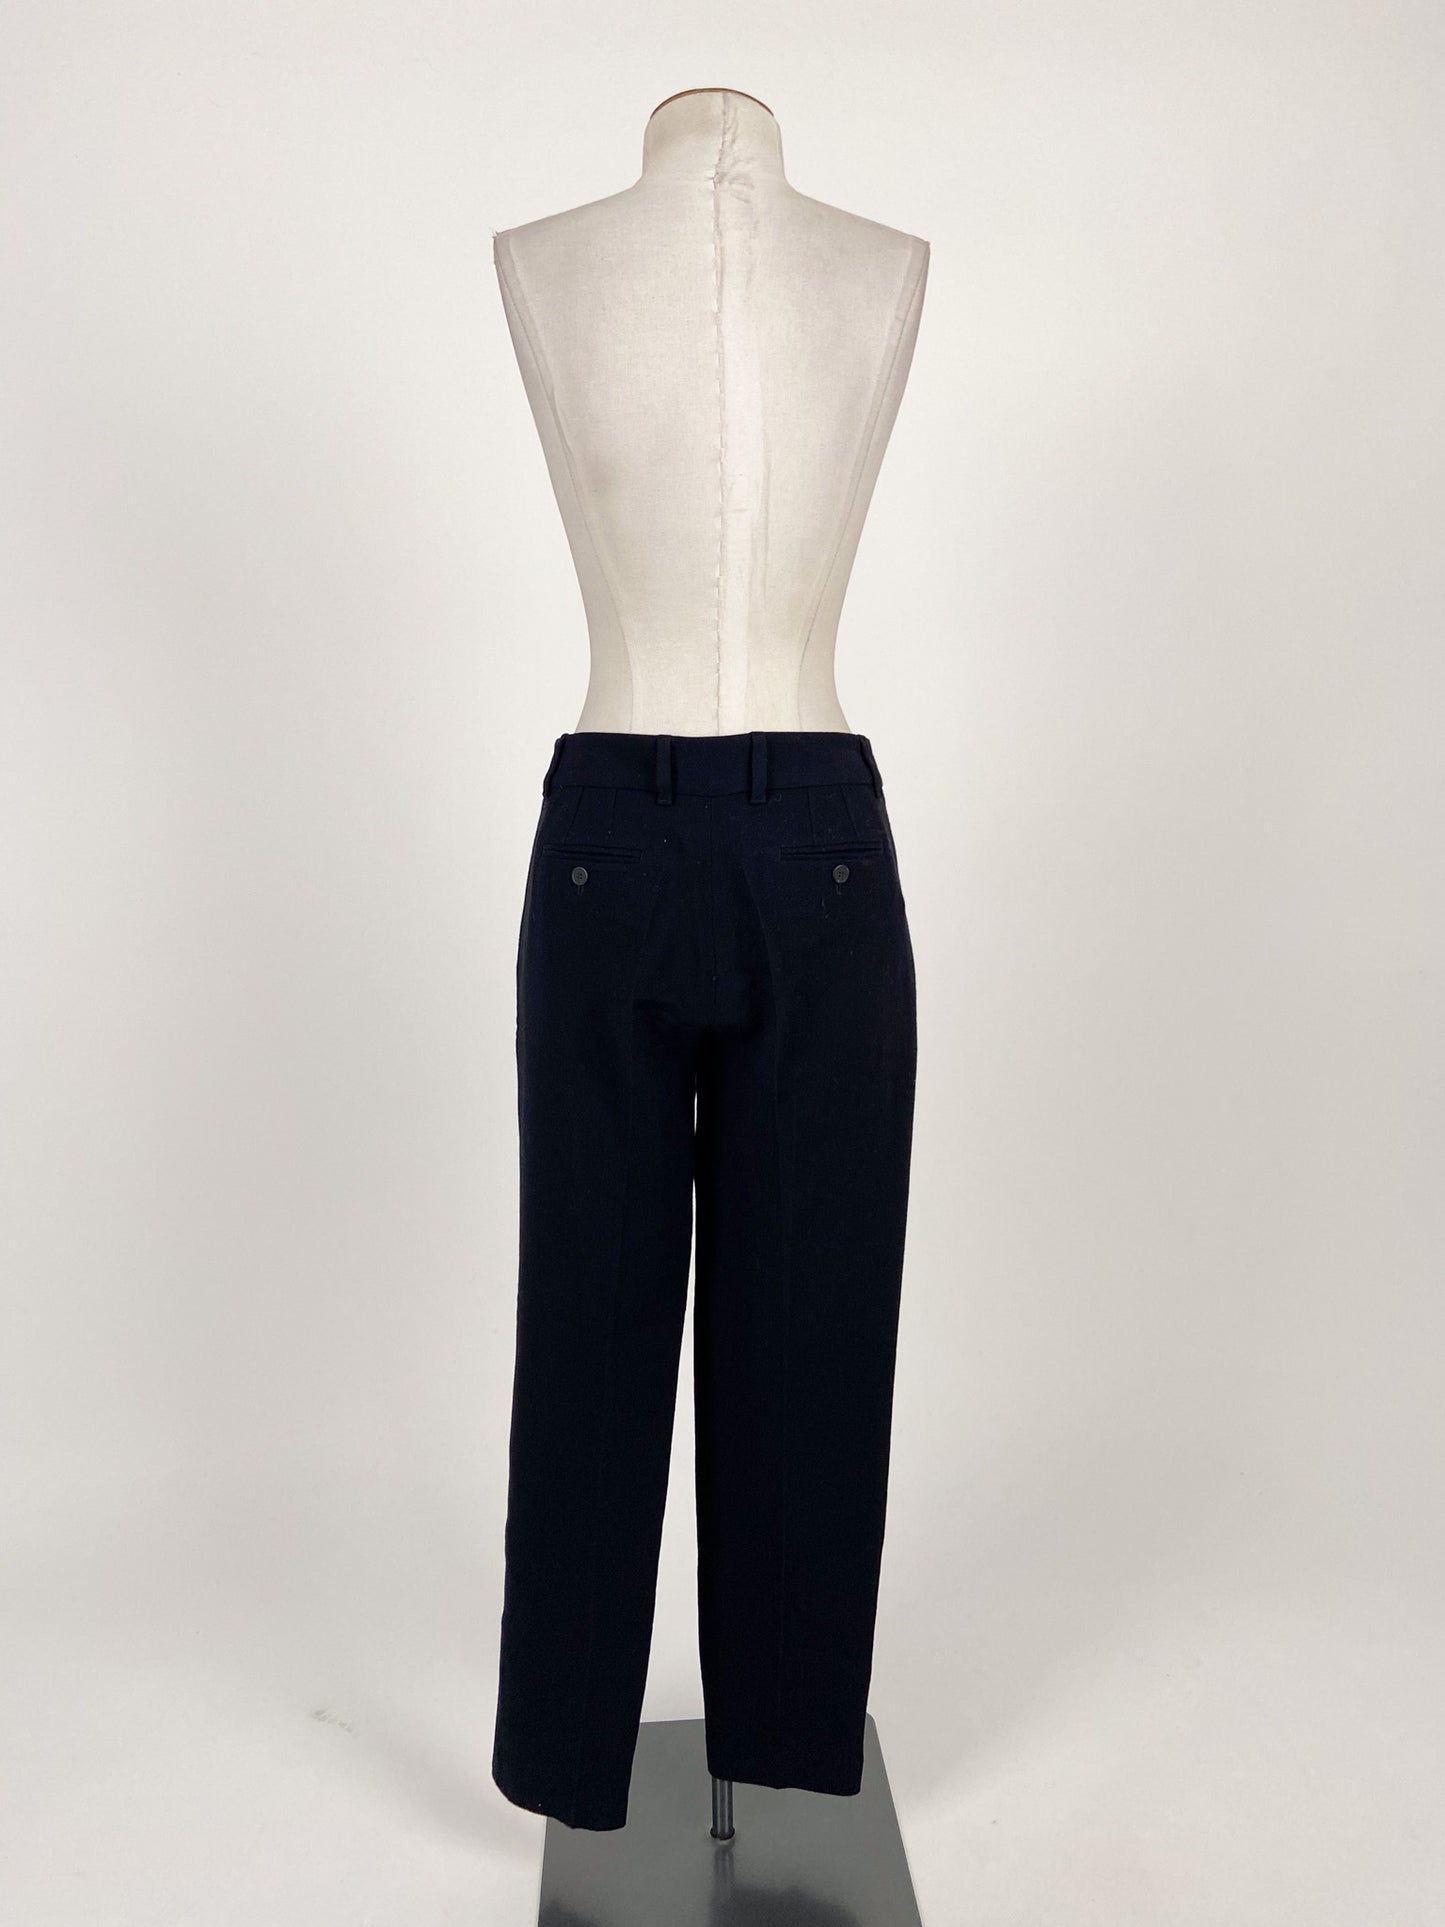 Armani | Black Pleated Pants | Size M